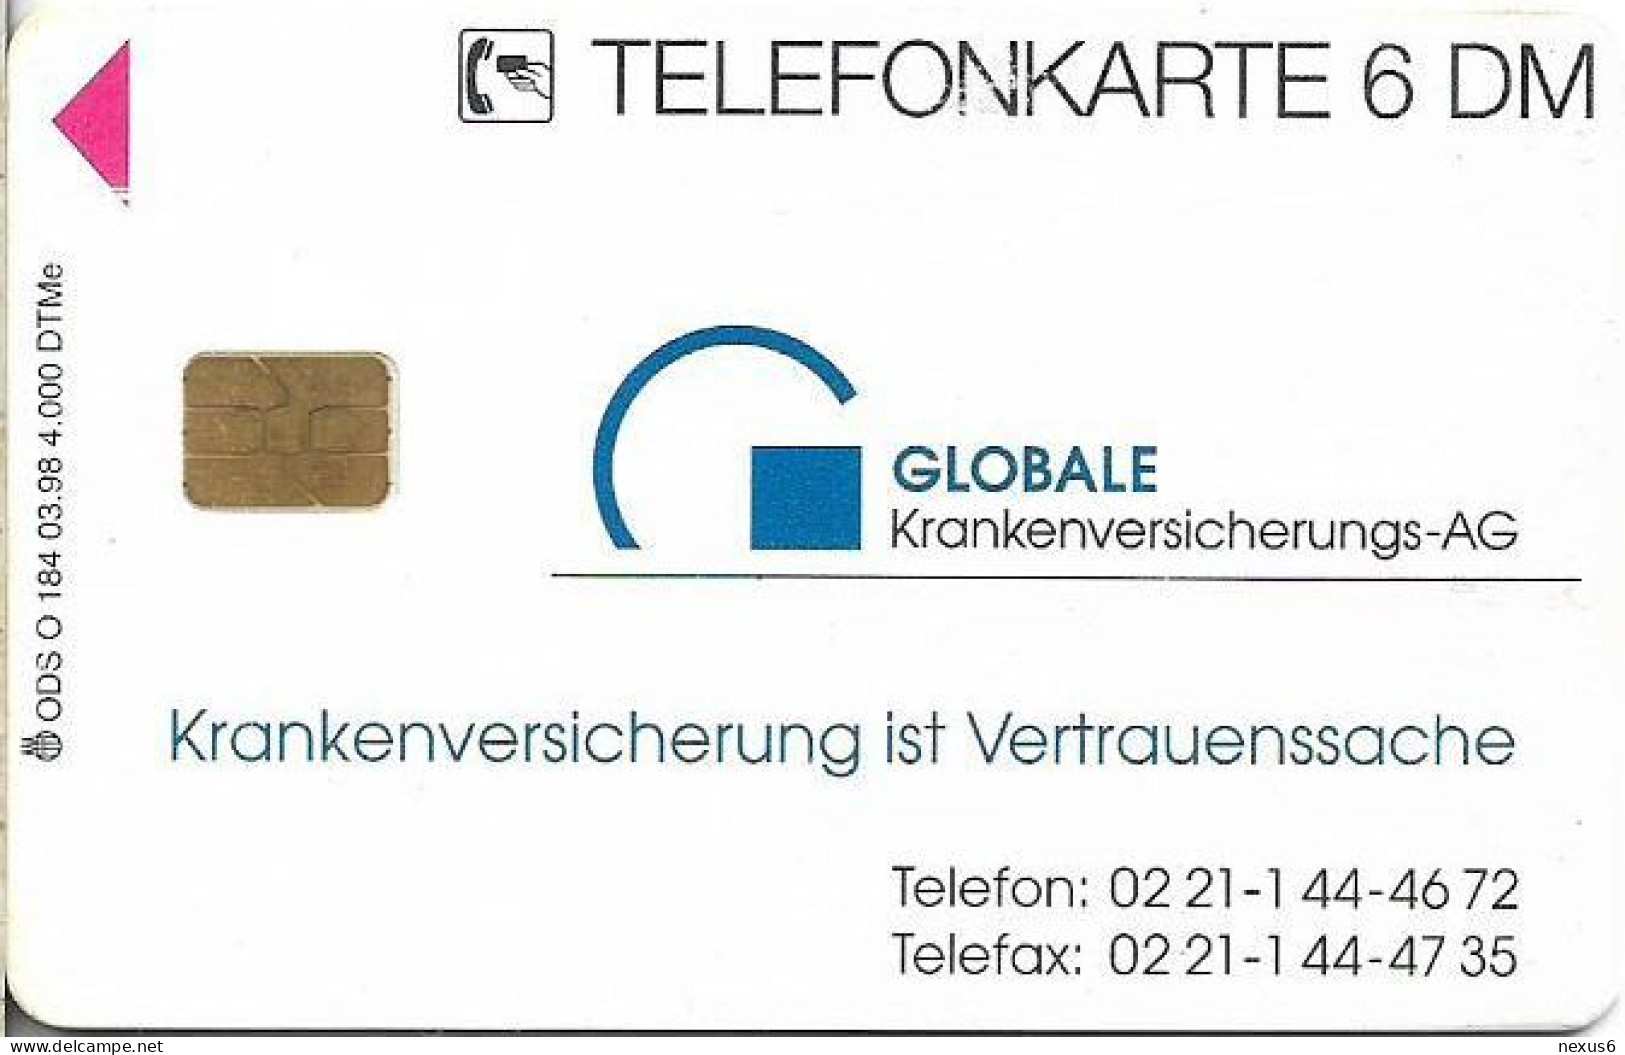 Germany - Globale Krankenversicherungs-AG (Telefon) - O 0184 - 03.1998, 6DM, 4.000ex, Used - O-Series: Kundenserie Vom Sammlerservice Ausgeschlossen